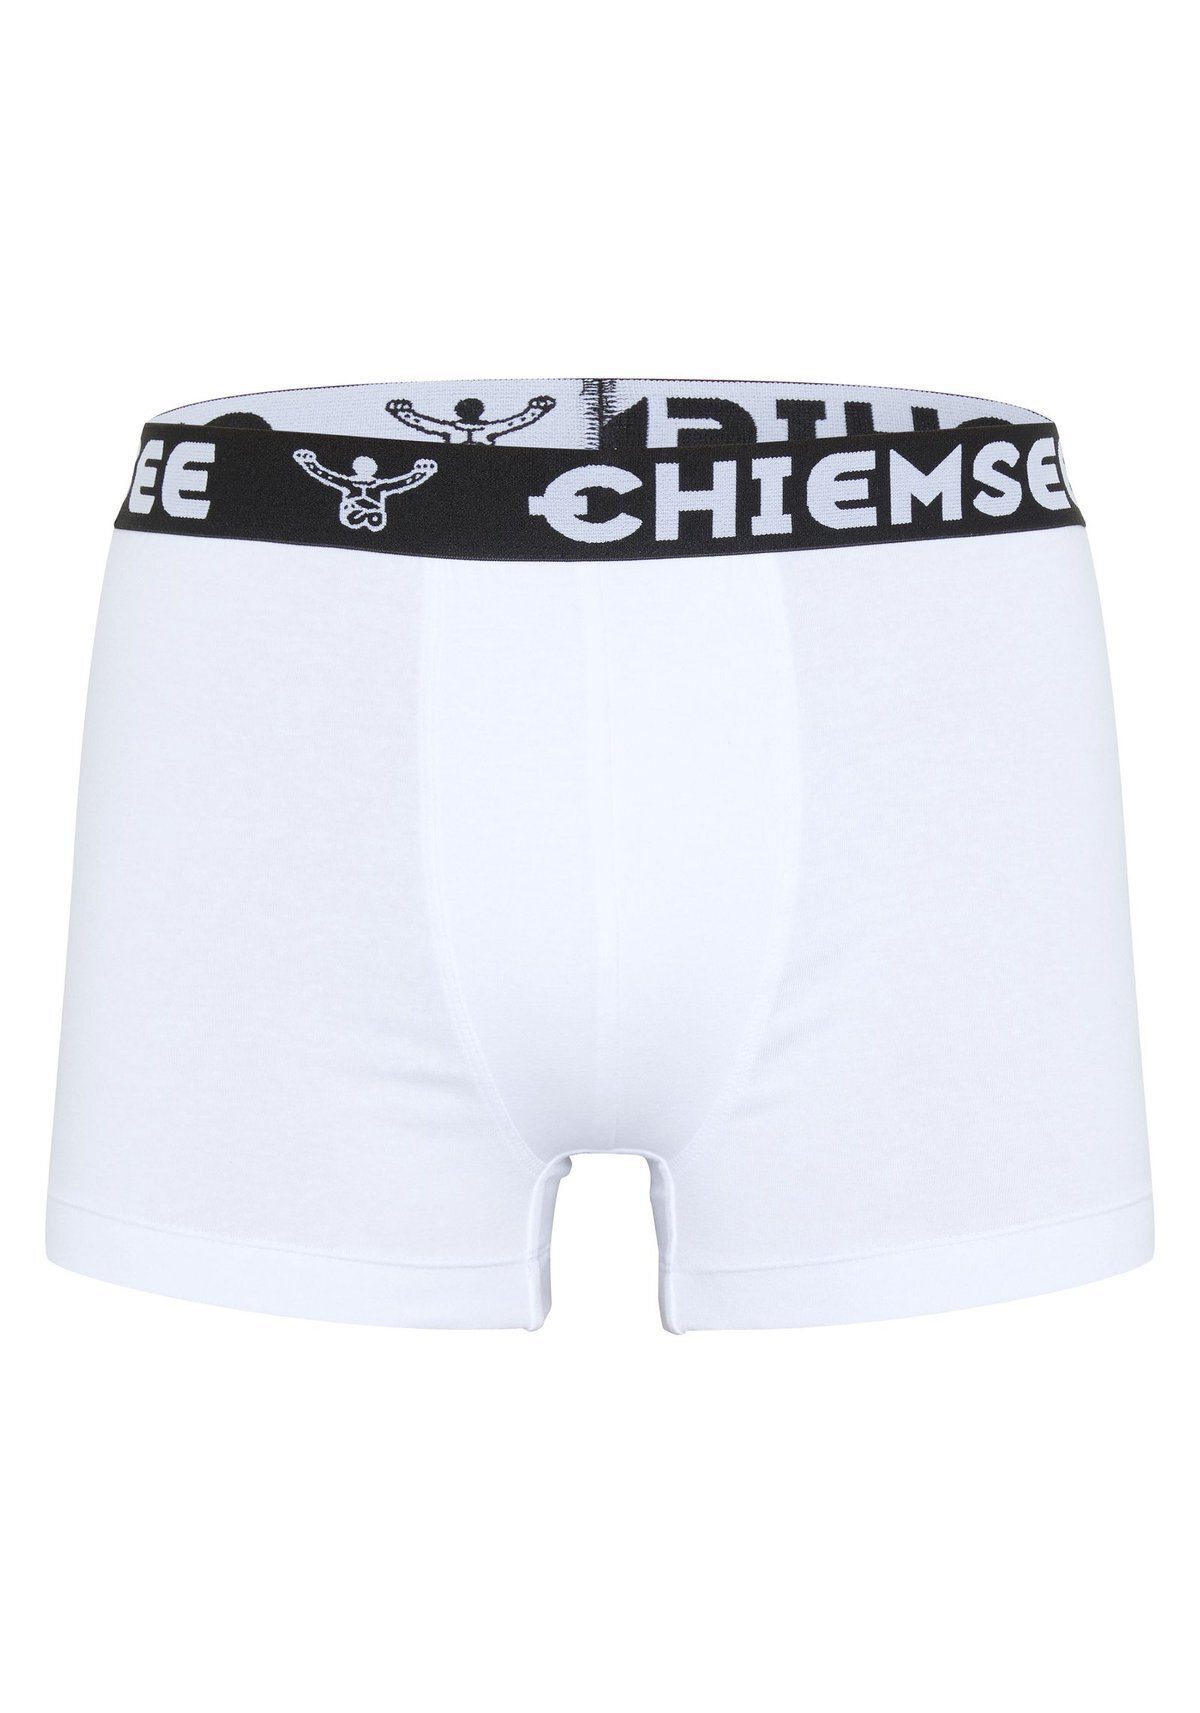 Chiemsee Boxer Boxershorts, Weiß - 3er Shorts, Logobund Herren Pack